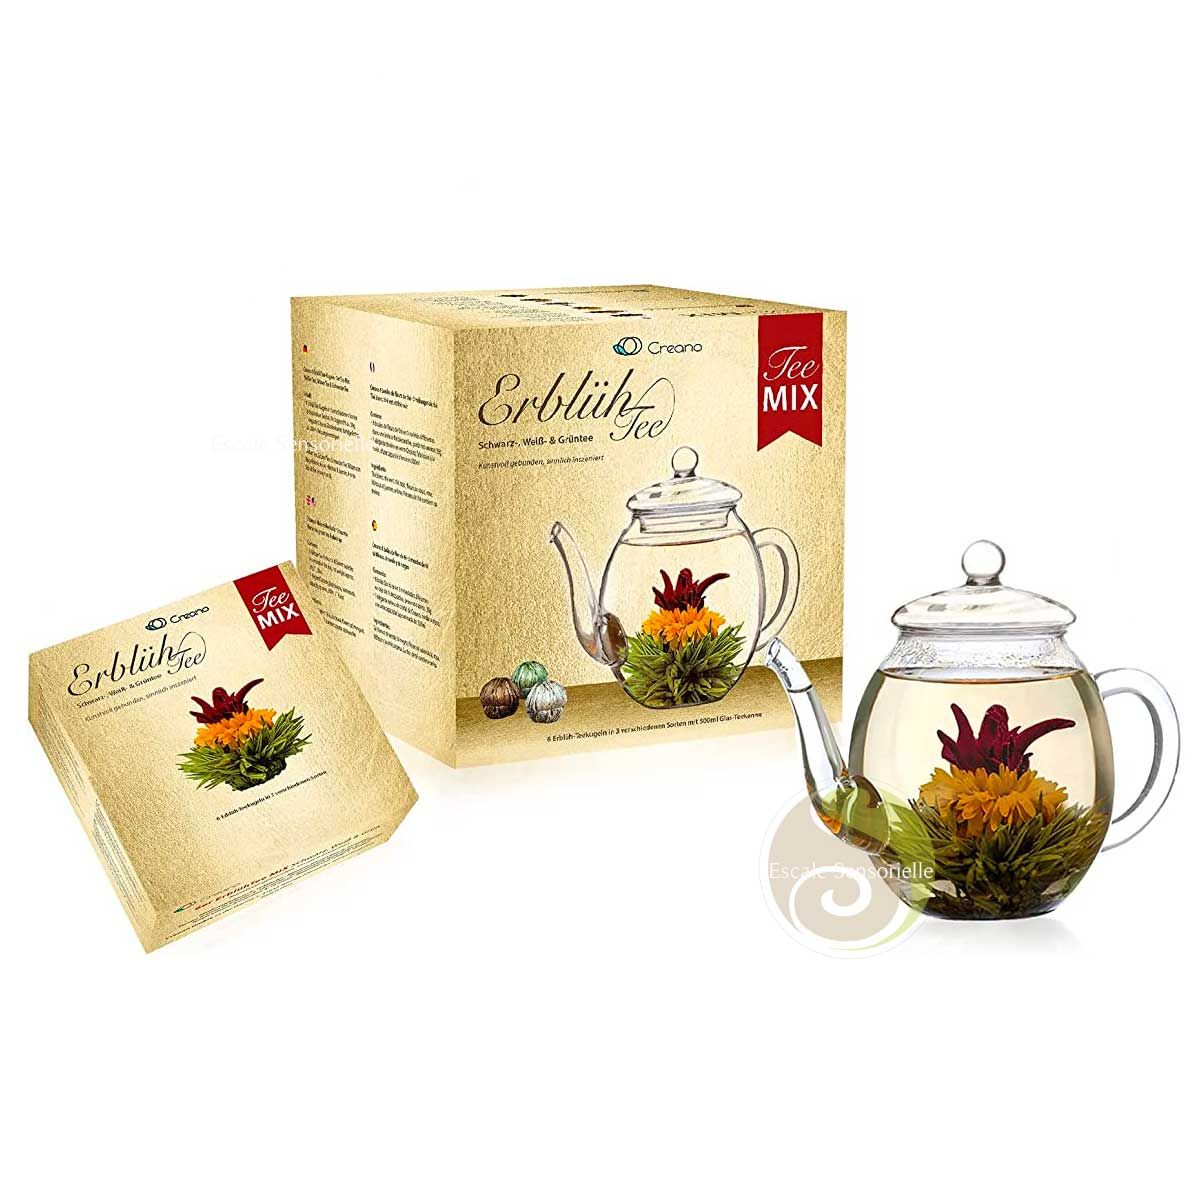 Fleurs de thé magique et théière transparente